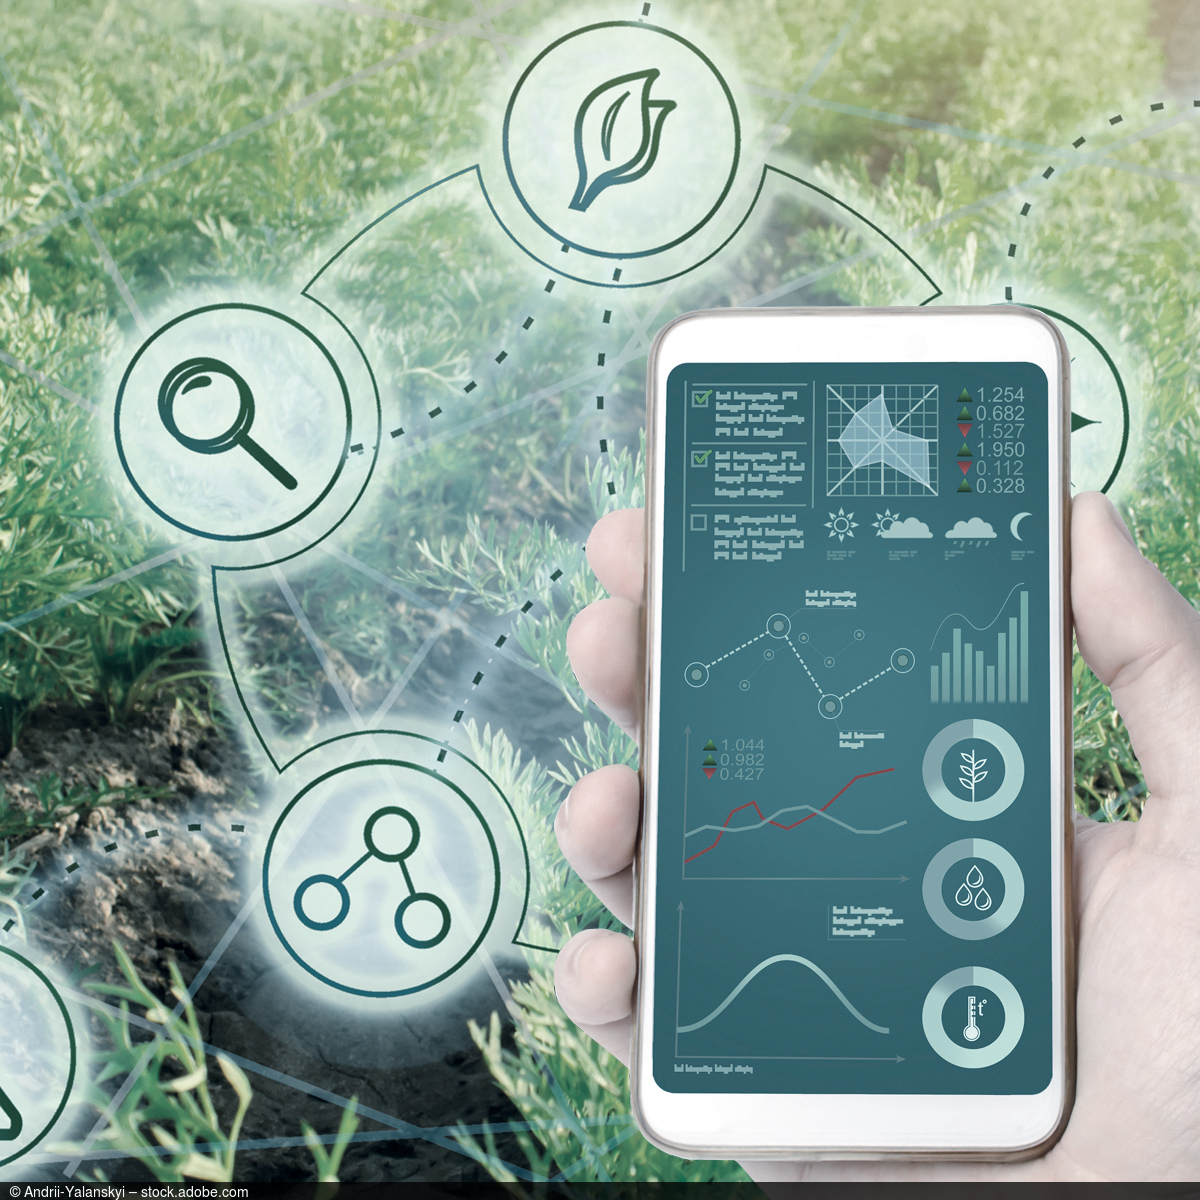 Auf einem Smartphone ist eine App geöffnet, die diverse Umweltfaktoren grafisch darstellt. Im Hintergrund zeigt das Bild ein grünes Feld.